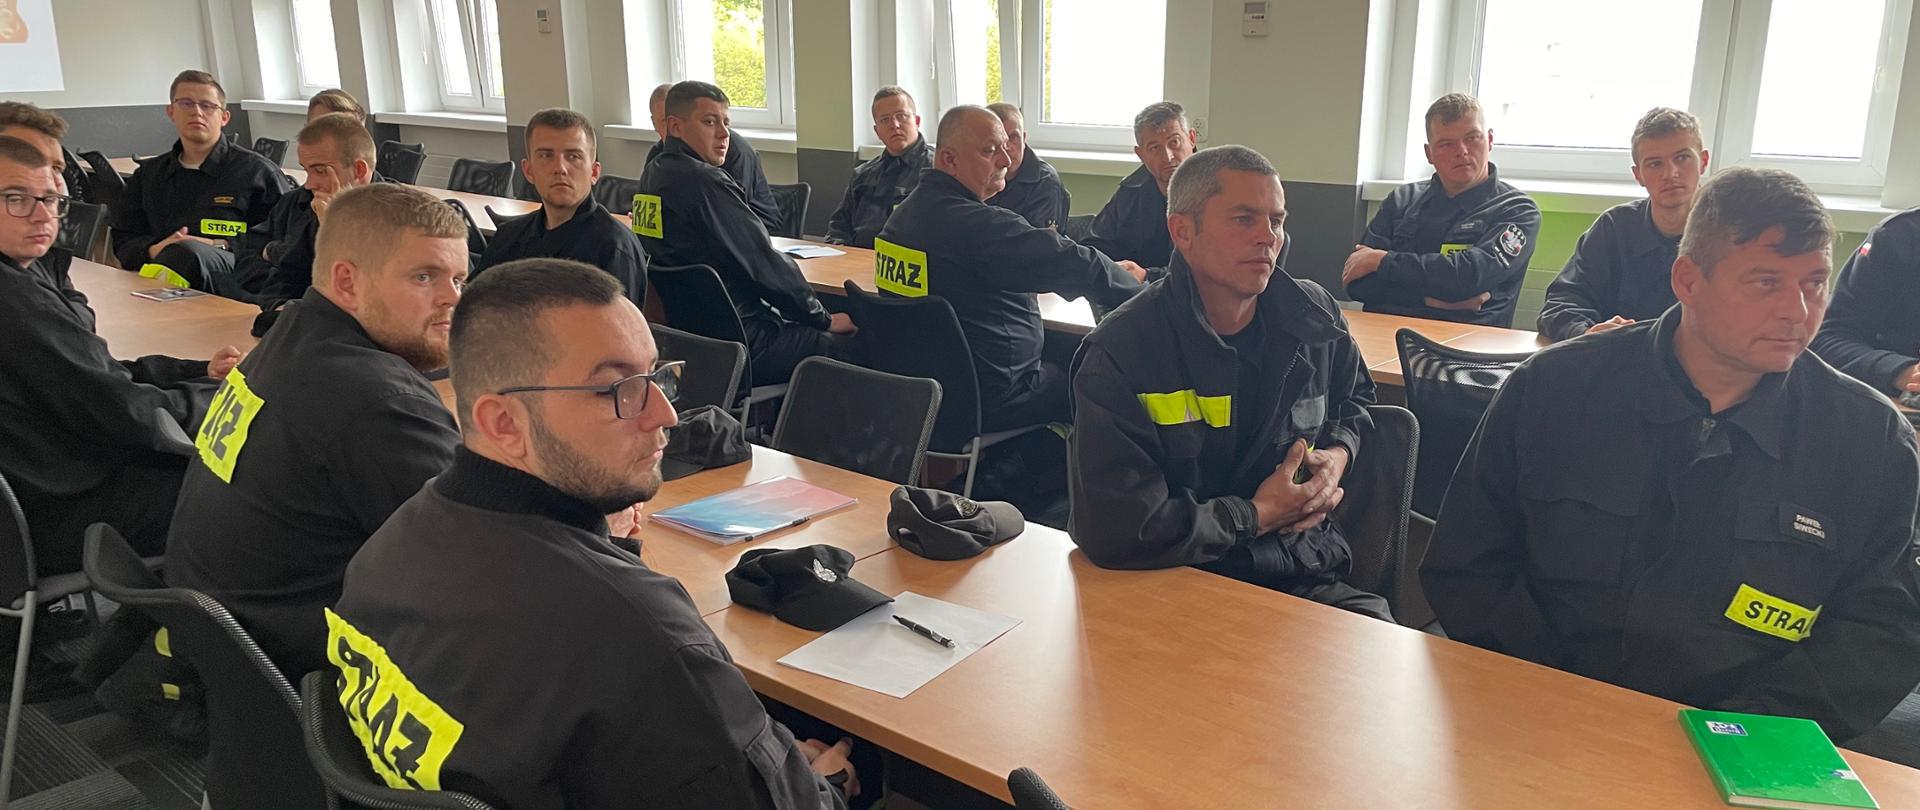 Na zdjęciu widzimy słuchaczy kursu, strażaków OSP, siedzących w sali wykładowej. Strażacy w czarnych mundurach OSP.